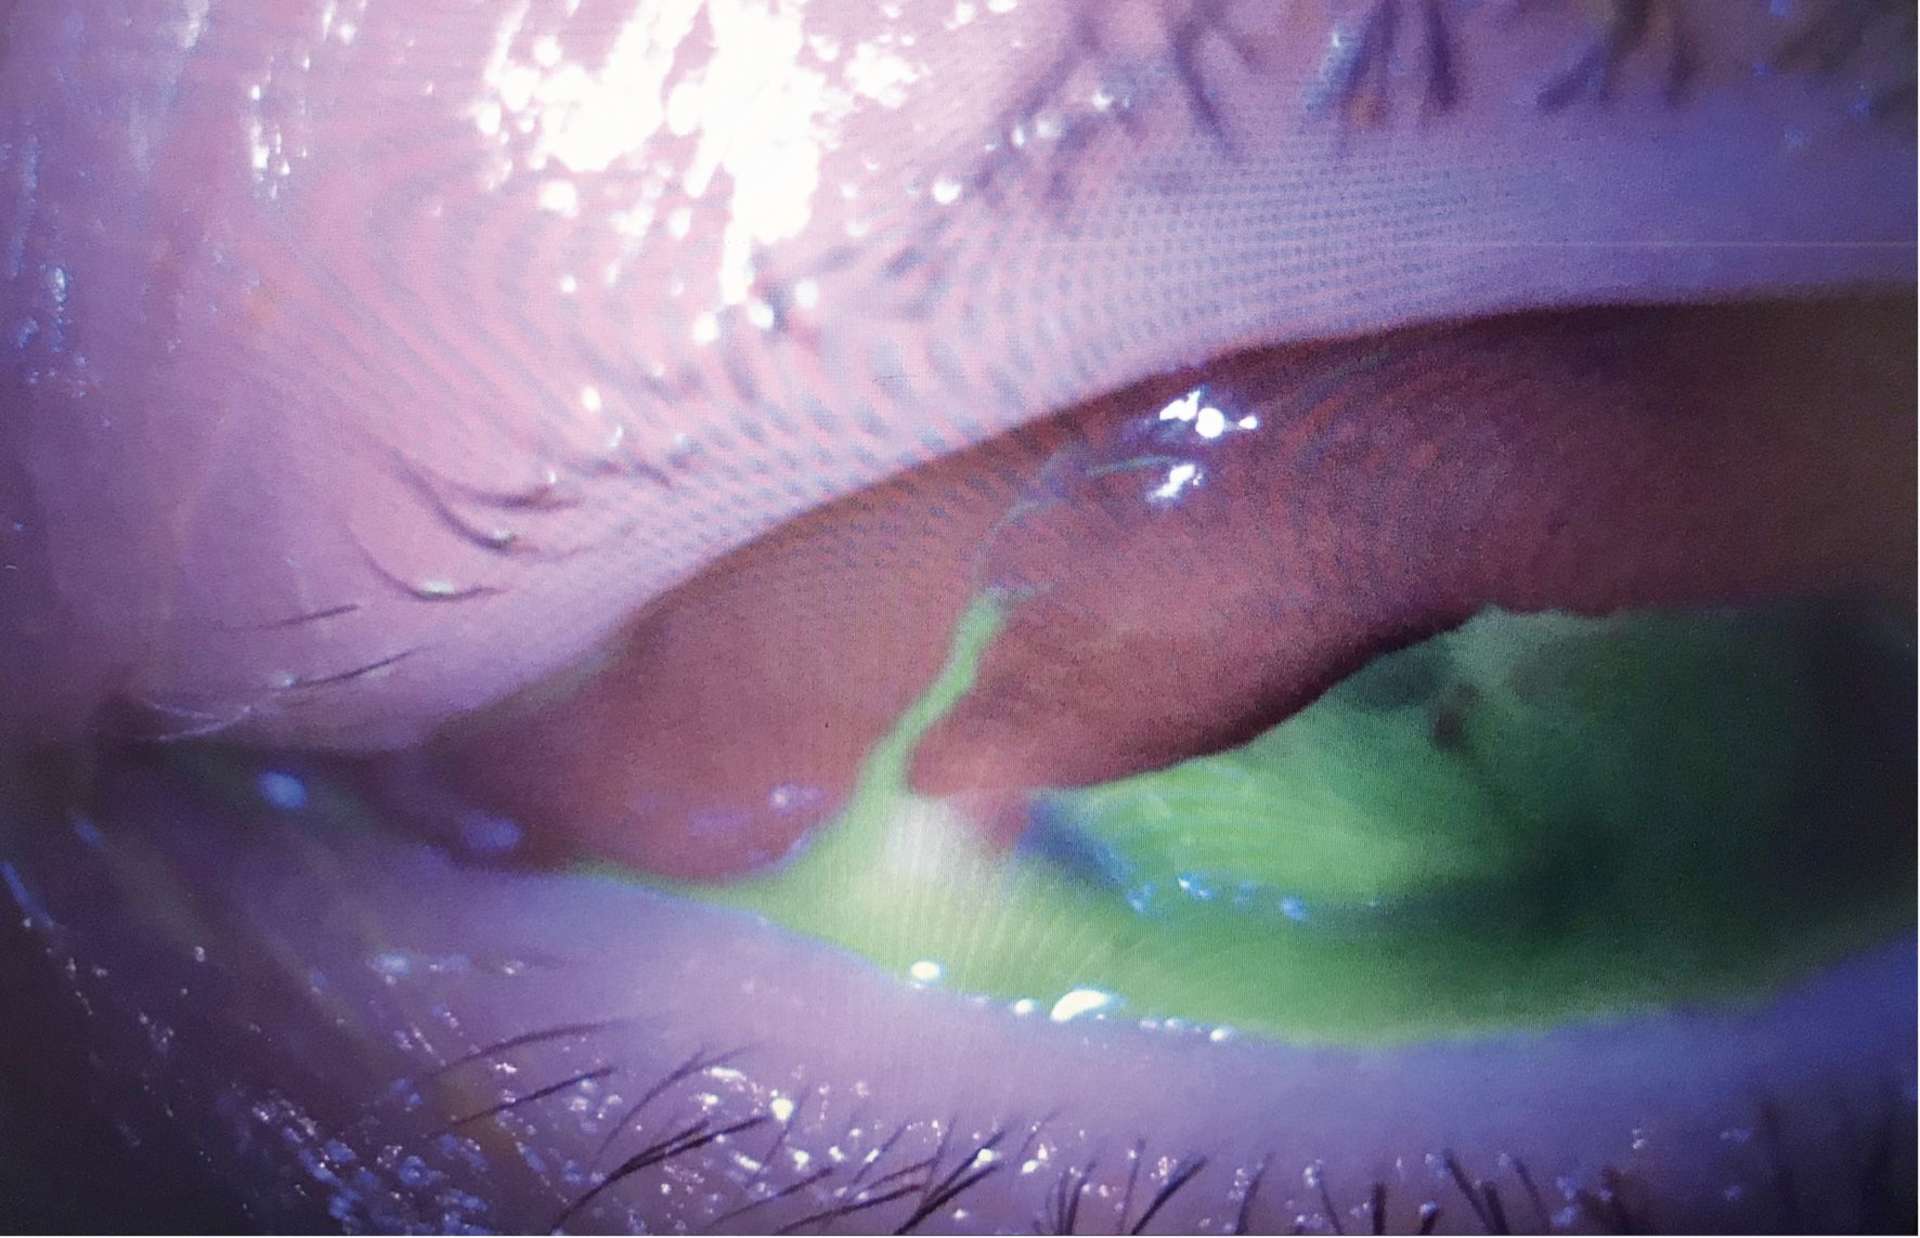 Figure 2. Examen à la lampe à fente après instillation de fluoresceine œil gauche présentant un signe de Seidel conjonctival : forte suspicion de plaie pénétrante du globe oculaire.
